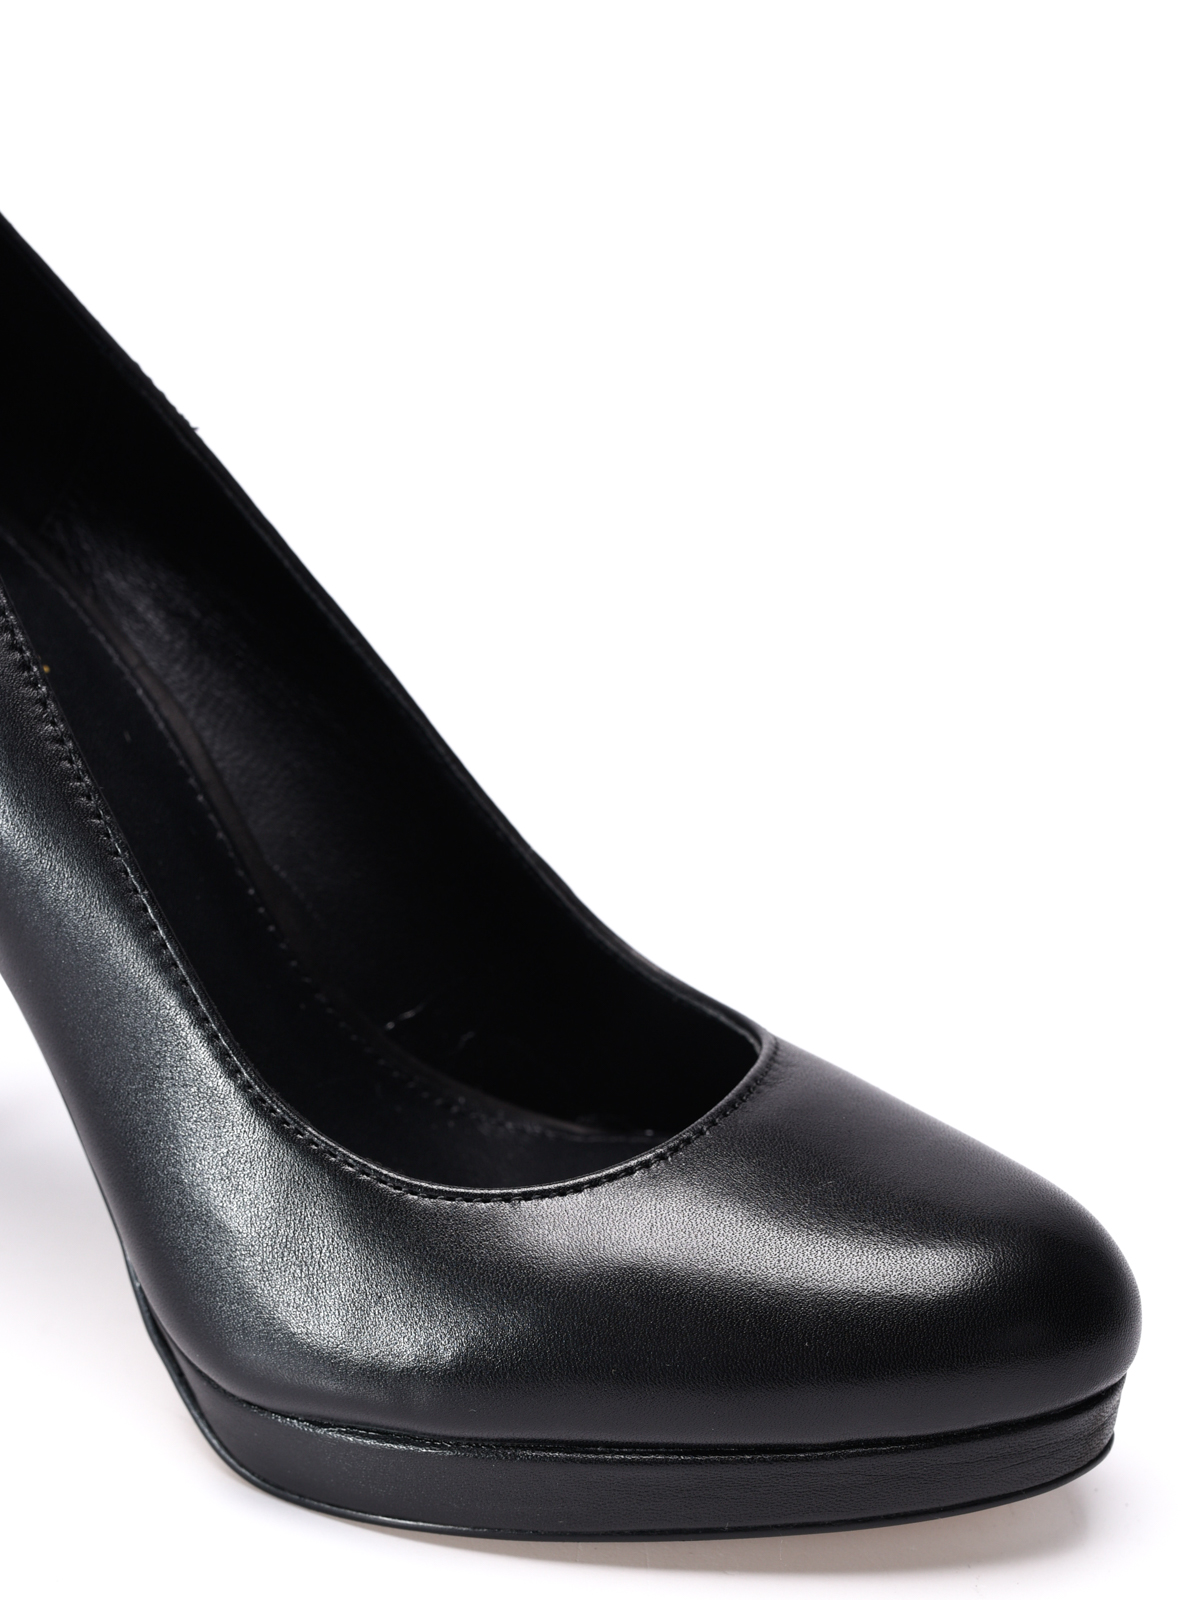 Court shoes Michael Kors - Antoinette leather platform pumps - 40R7ATHP1L001